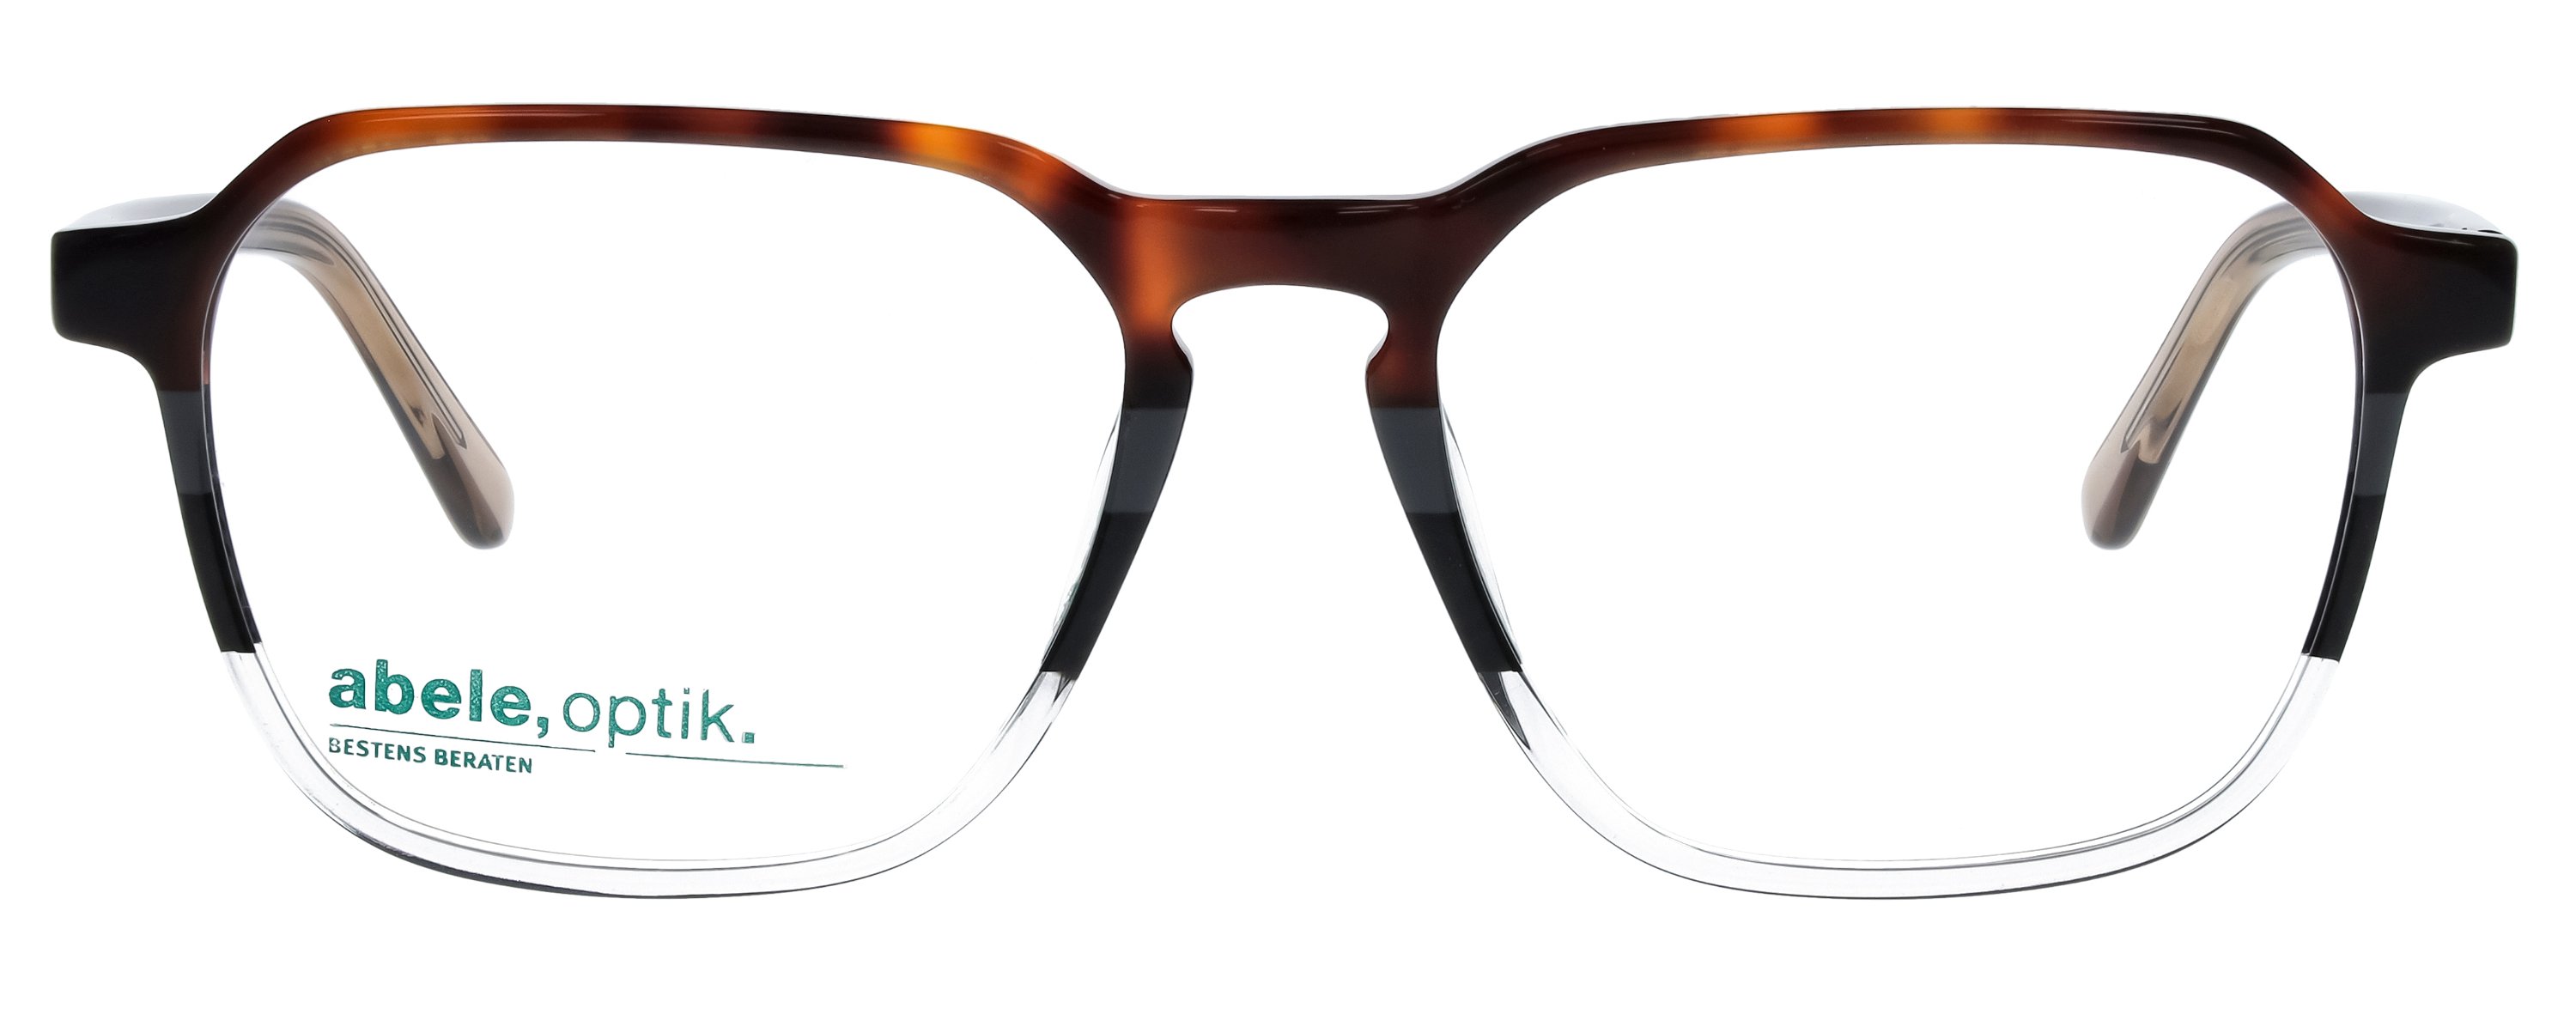 Das Bild zeigt die Korrektionsbrille 148941 von der Marke Abele Optik in braun gemustert.